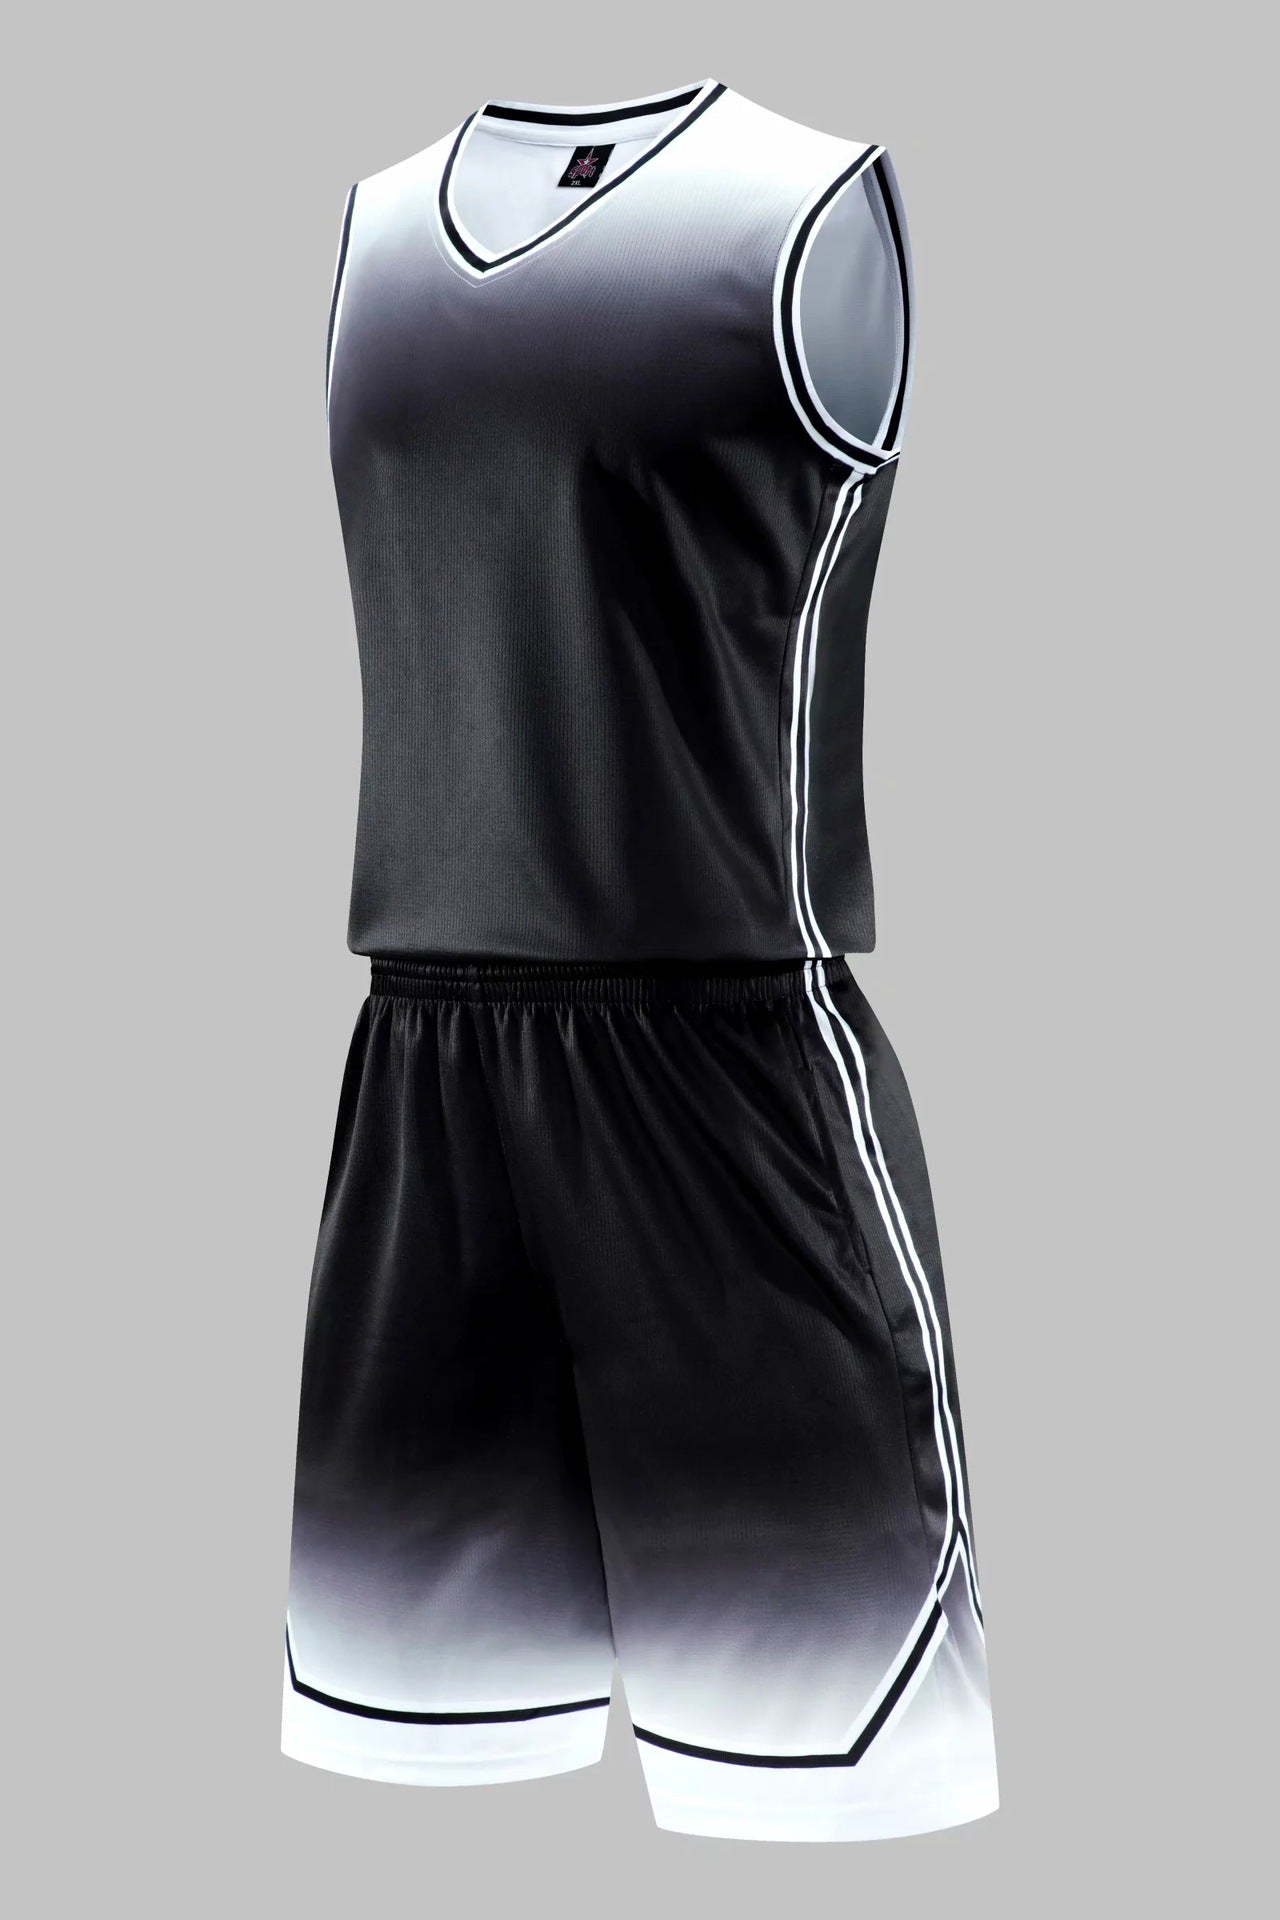 gradient-basketball-uniform-sports-suit-children-adult-sweat-absorbent-basketball-uniform